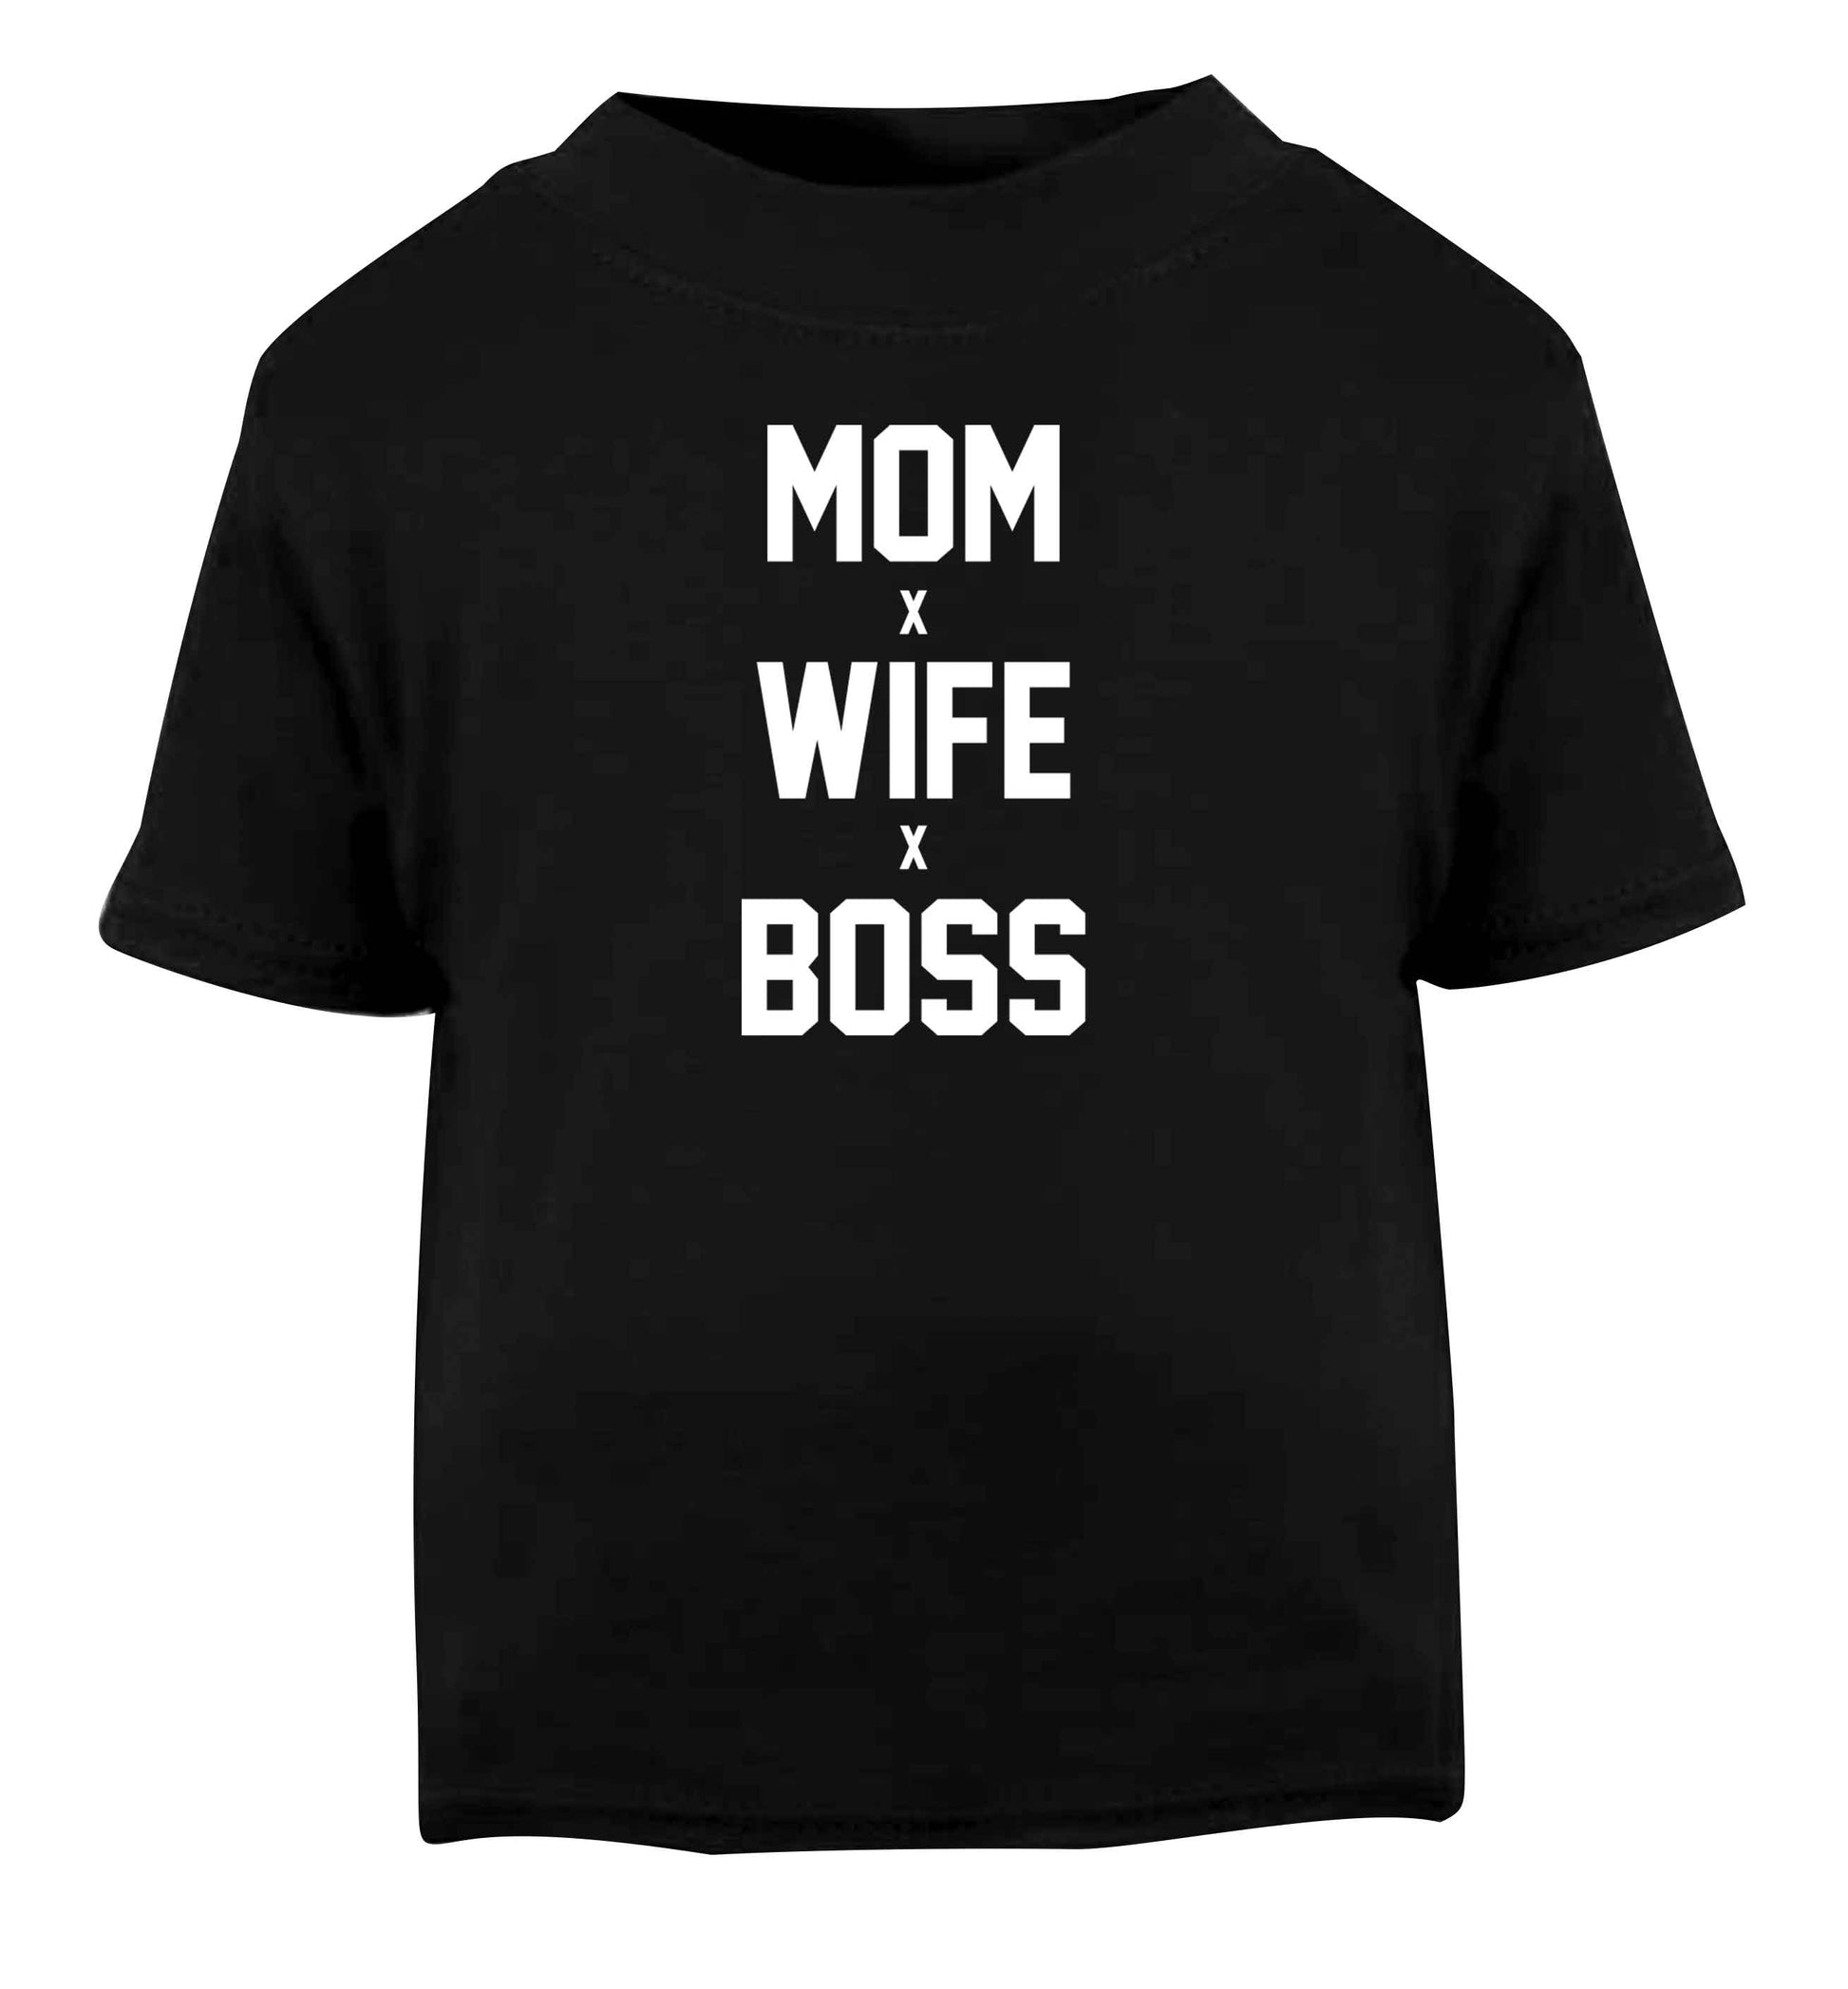 Mum wife boss Black baby toddler Tshirt 2 years